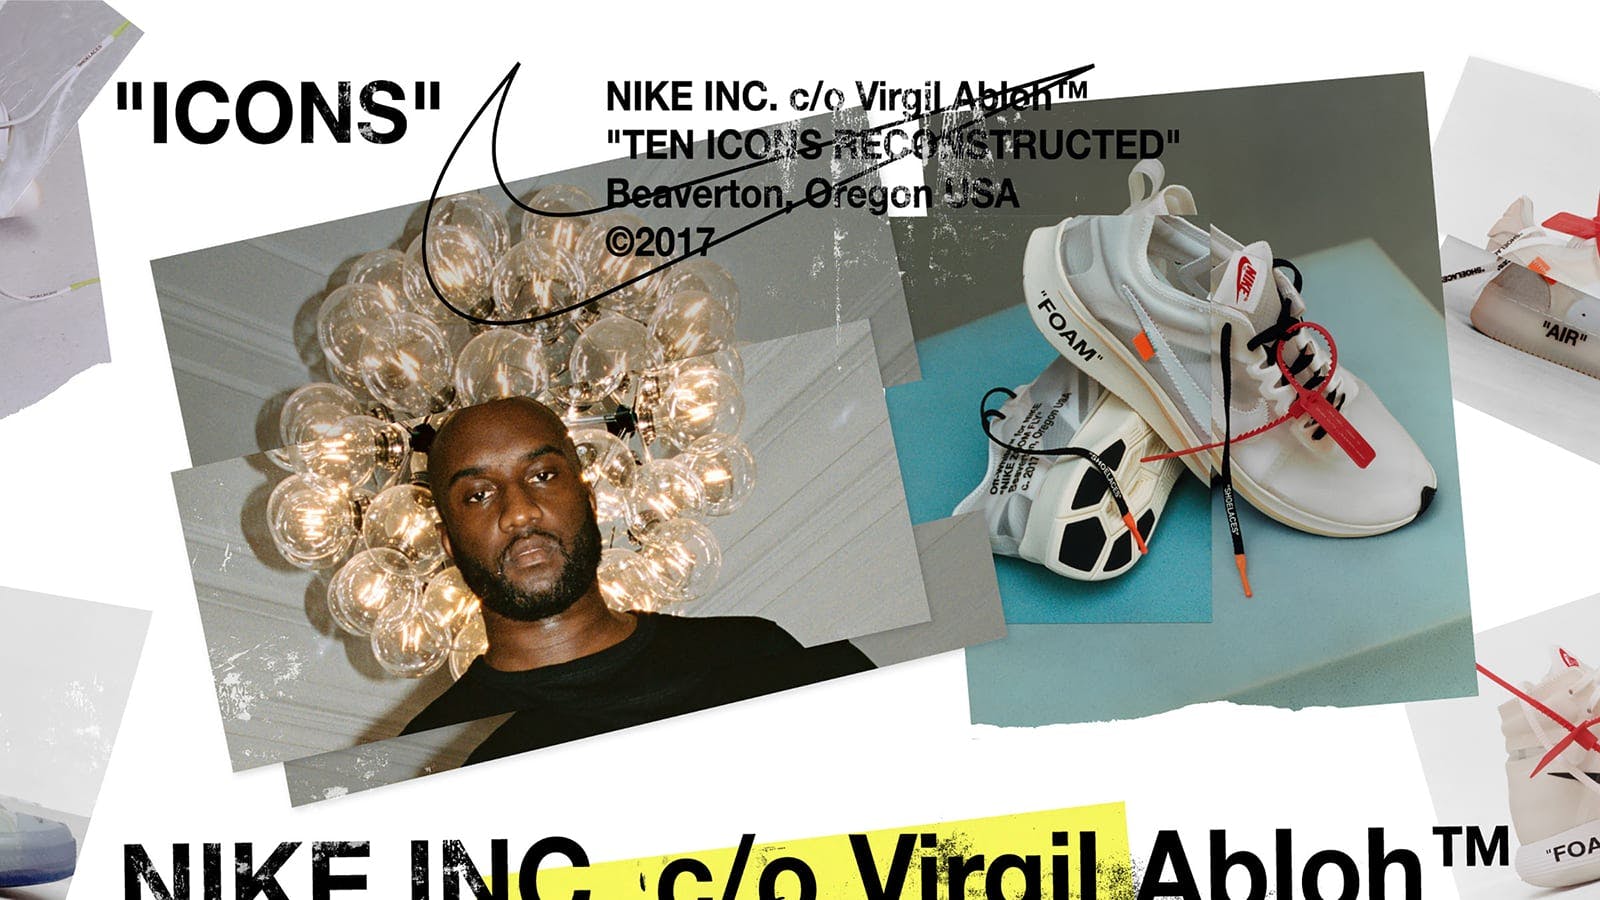 Virgil Abloh Speaks on Major Nike Partnership